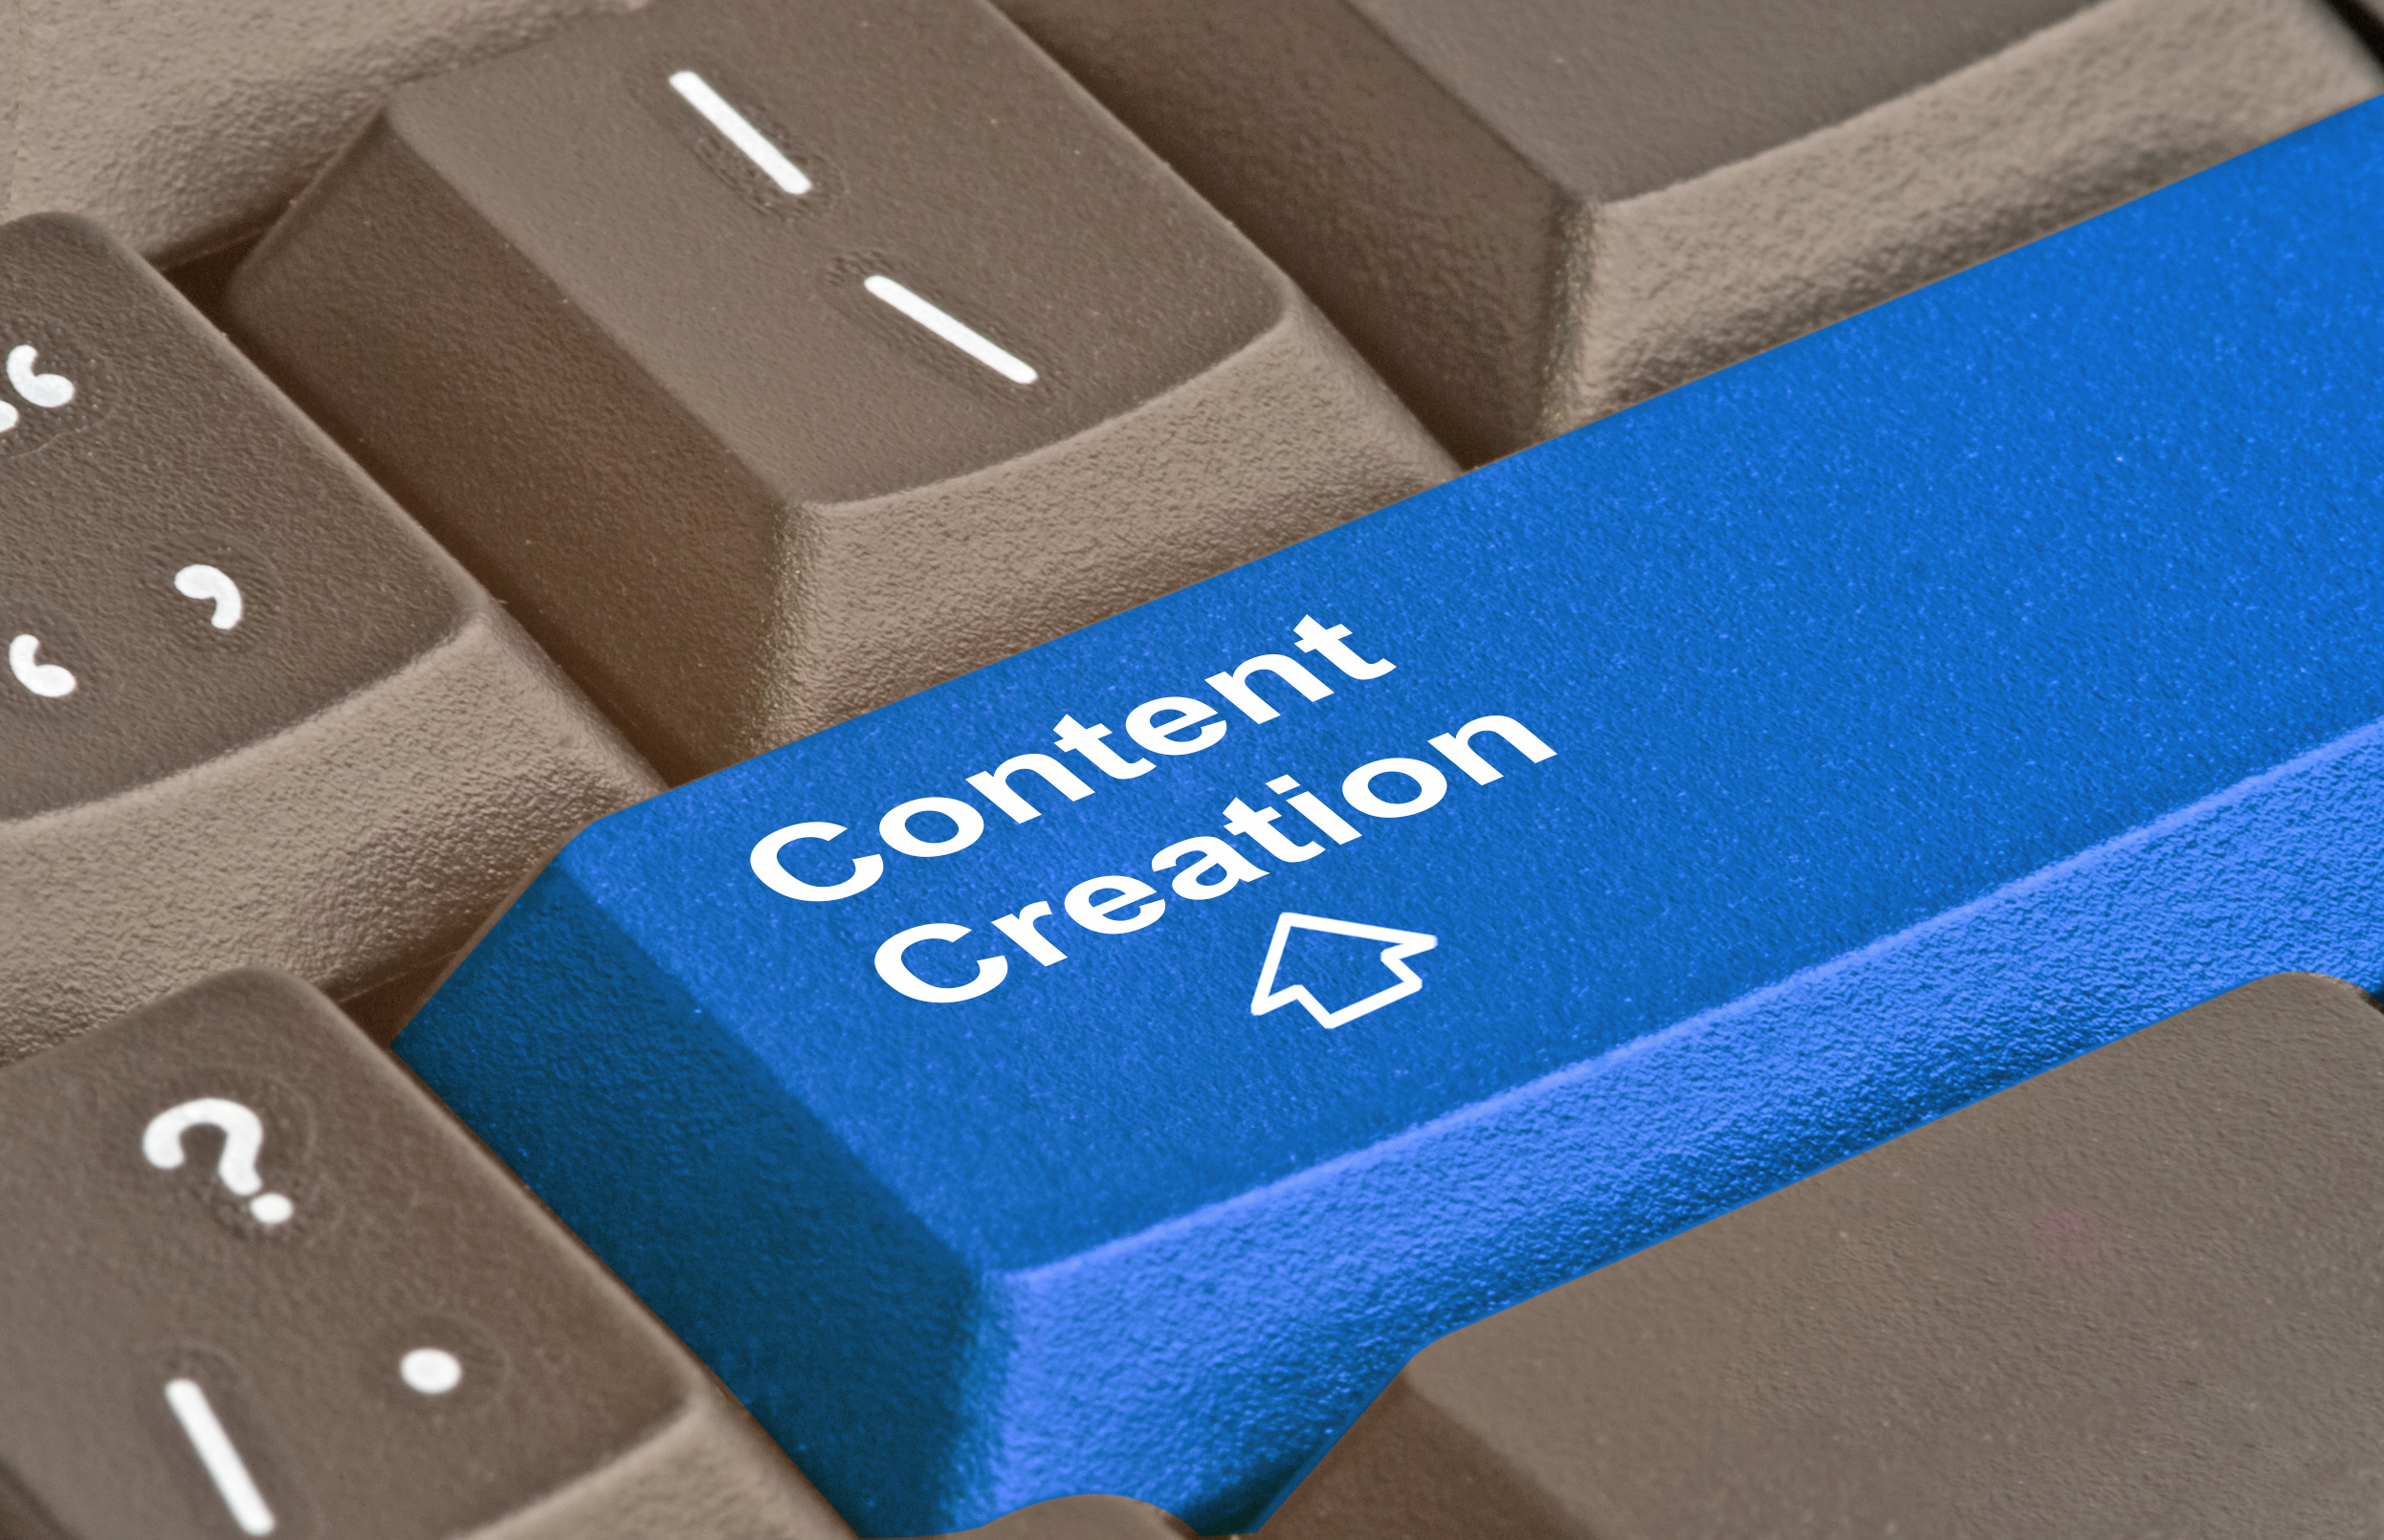 Let's Creat Content!